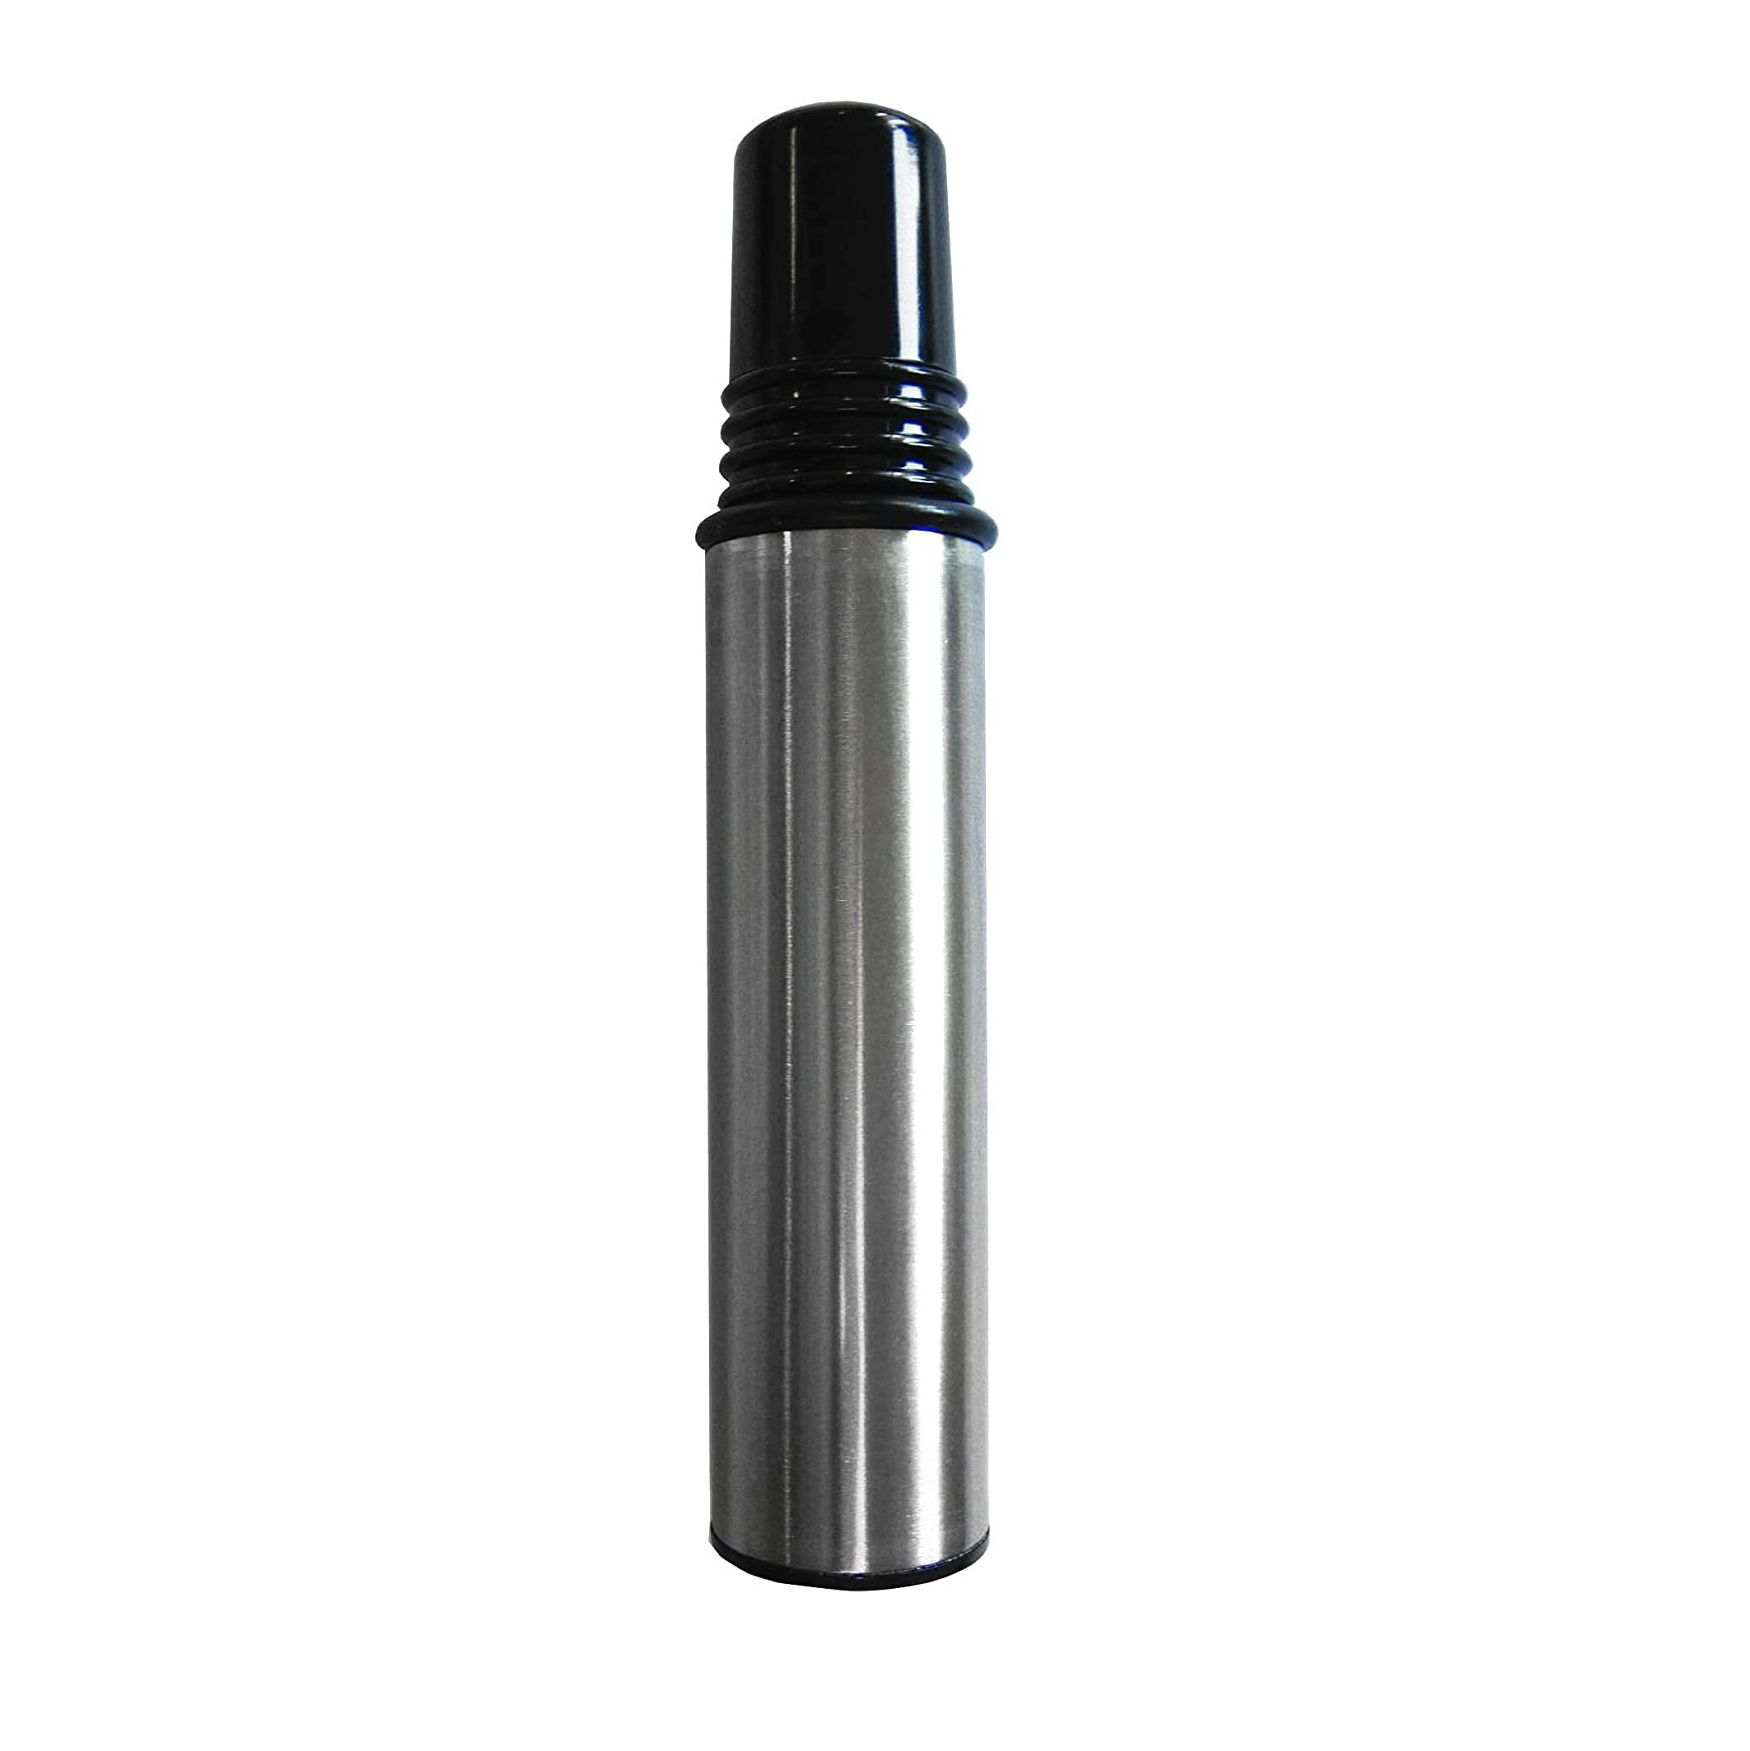 Oliera spray in acciaio Inox 18/8, meccanismo e tappo in plastica